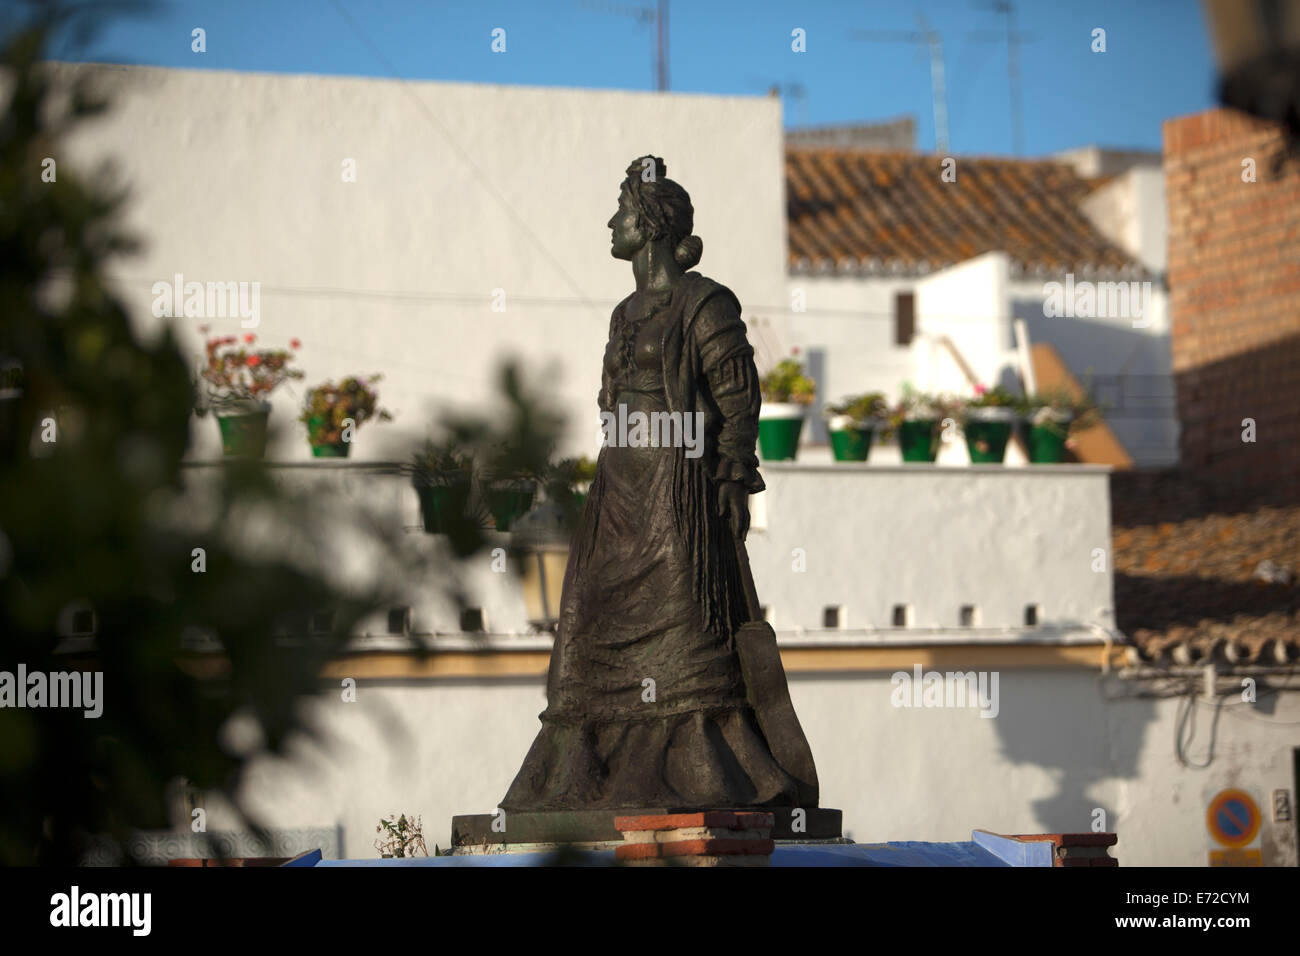 Une sculpture de l'artiste Flamenco La Petenera décore une place publique à Paterna de Rivera, la province de Cádiz, Andalousie, Espagne, Banque D'Images